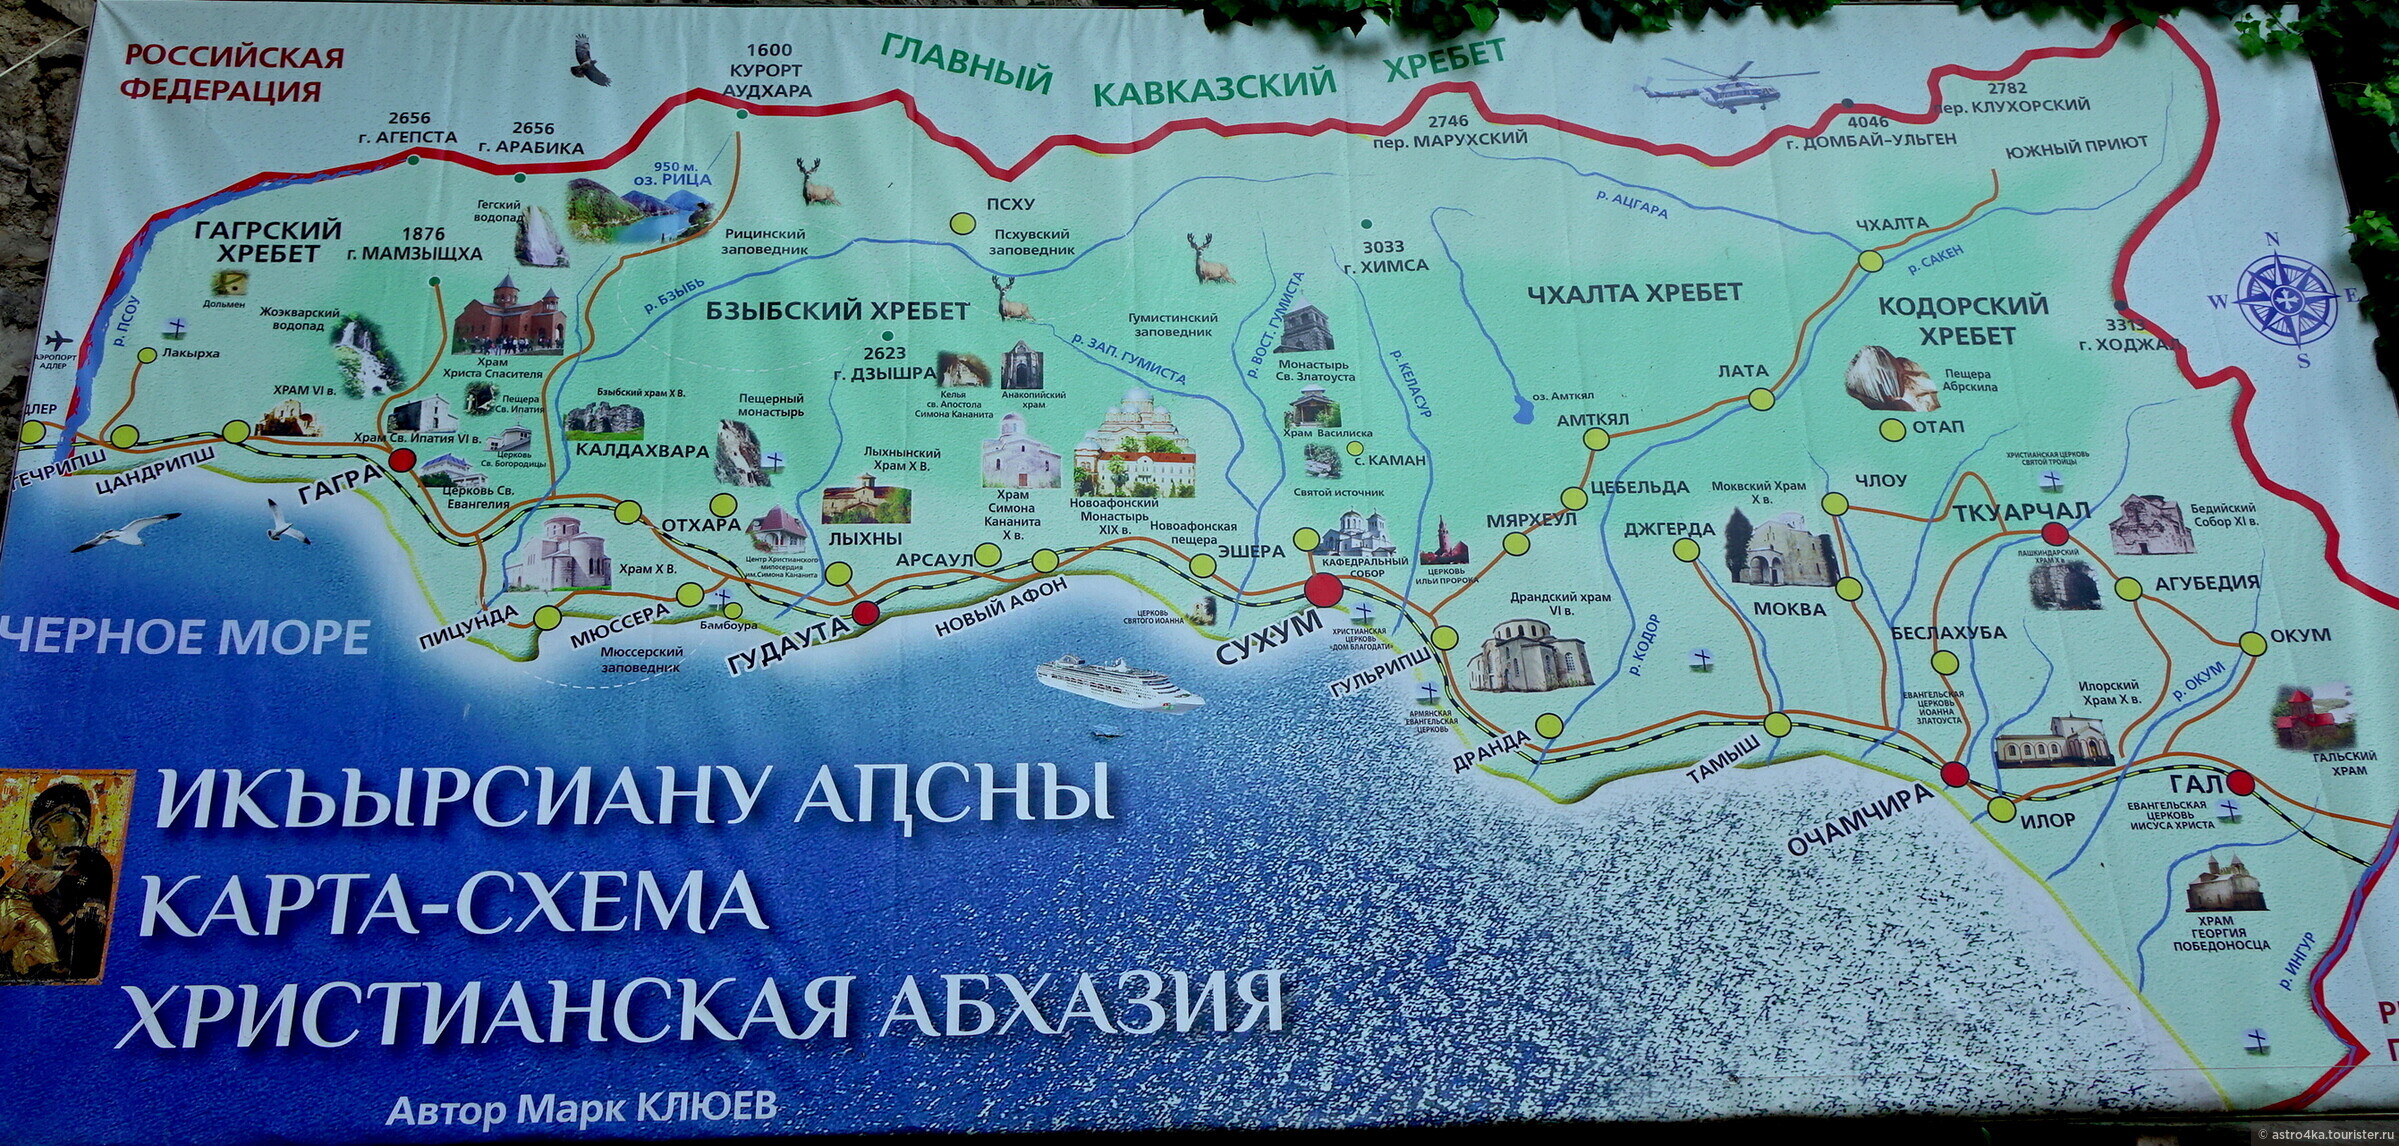 Абхазскую карту. Абхазия карта с достопримечательностями подробная. Туристическая карта Абхазии. Туристическая карта Абхазии с достопримечательностями. Абхазия достопримечательности карта с достопримечательностями.